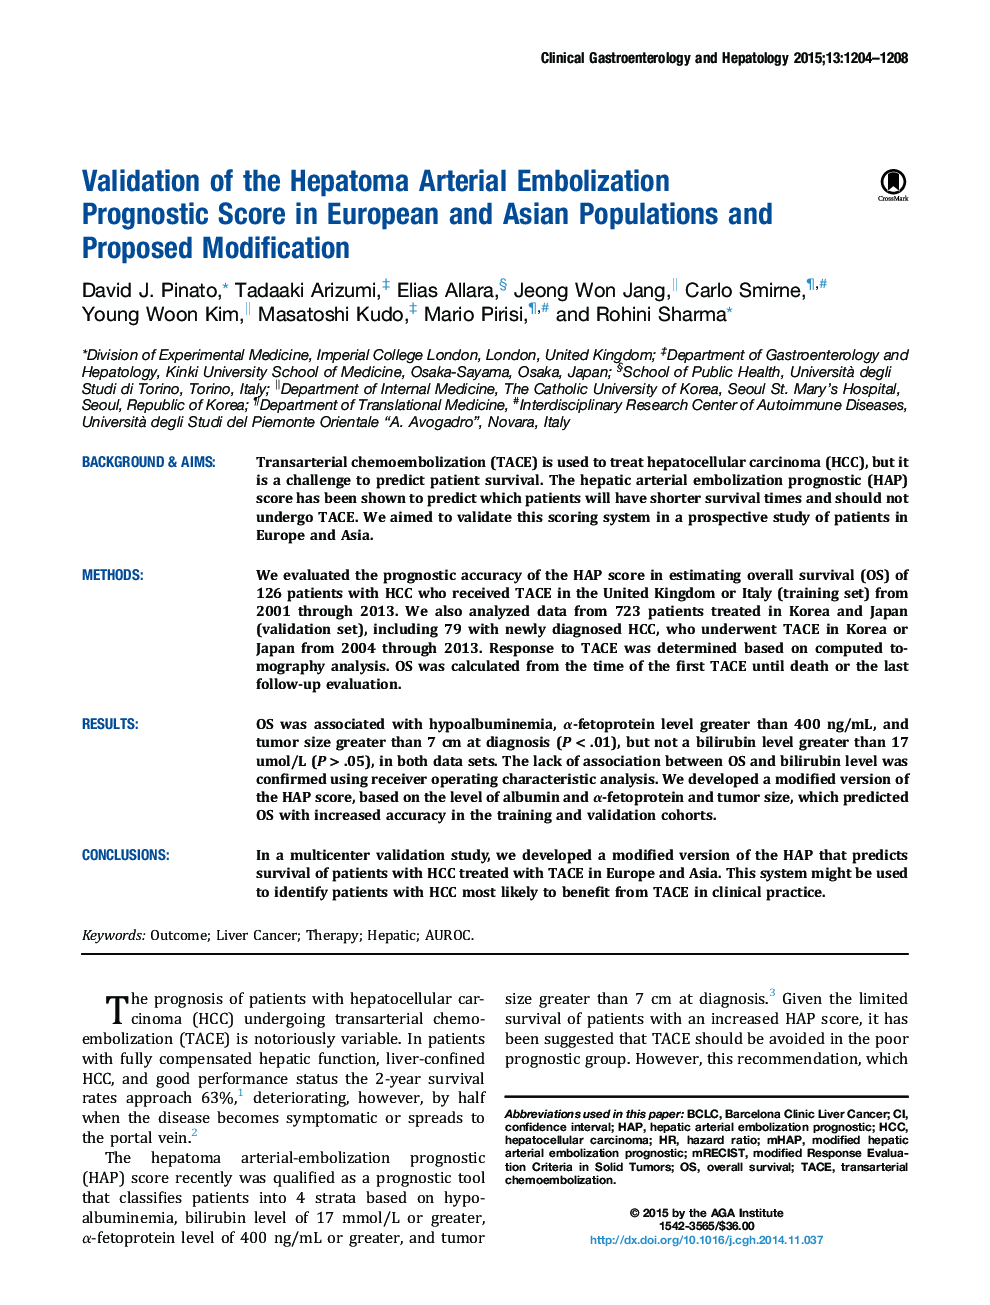 اعتبار سنجی آمبولیزاسیون شریانی هپاتوماتیک، یک پیش بینی در جمعیت اروپائی و آسیایی و اصلاح پیشنهاد شده 